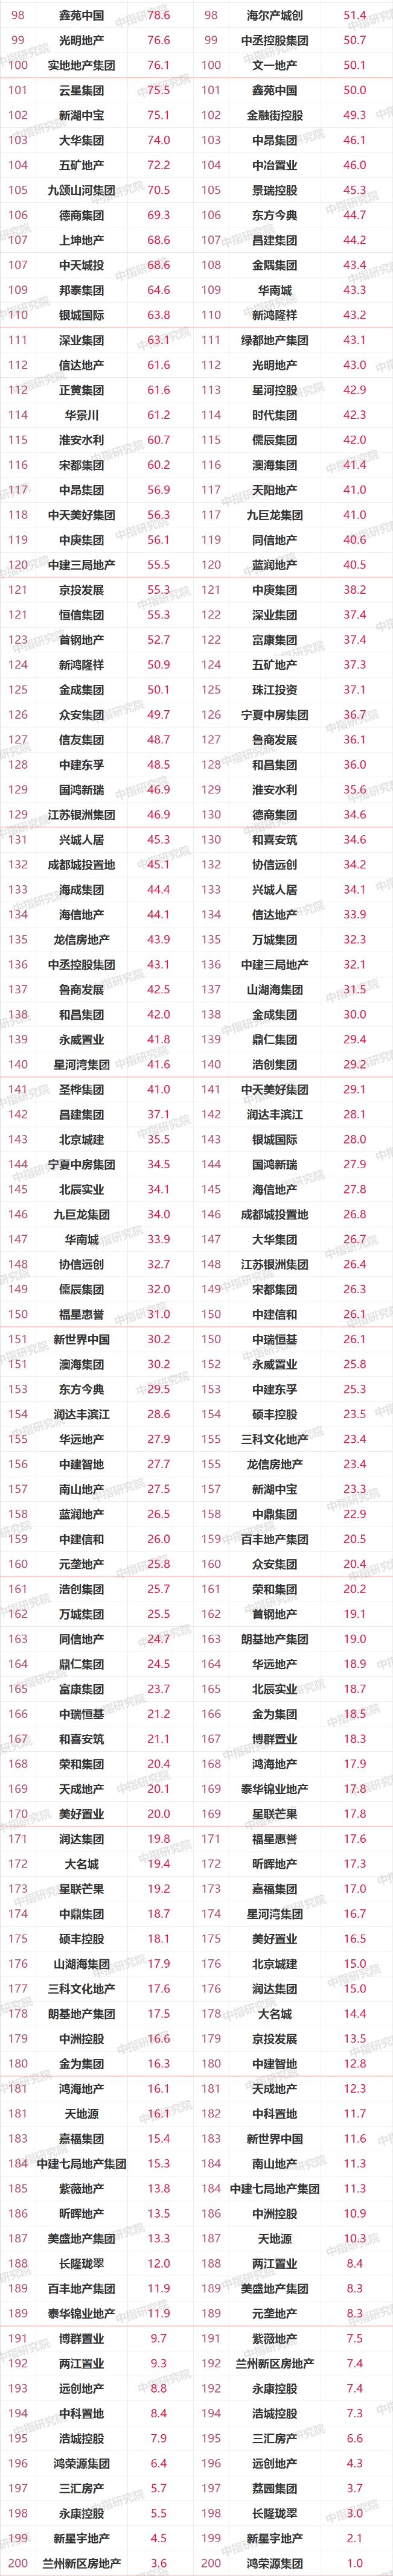 2021年1-3月中国房地产企业销售业绩TOP200:百强销售额增长率均值104.1%